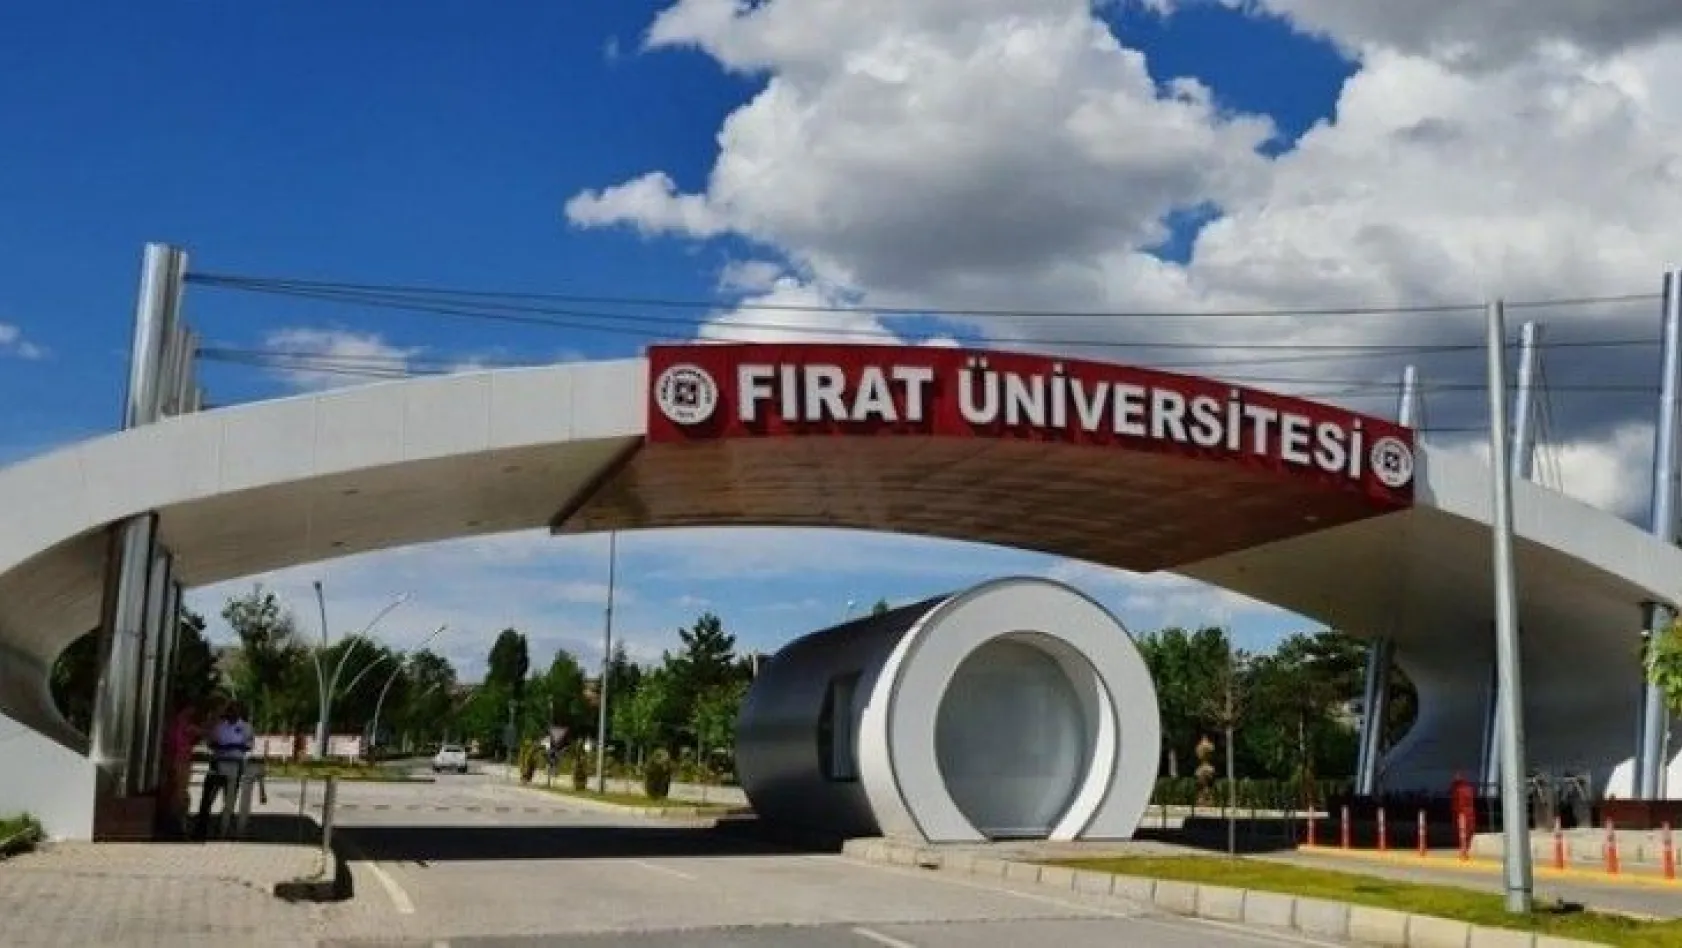 Fırat Üniversitesi, dünyada başarılı üniversiteler arasında